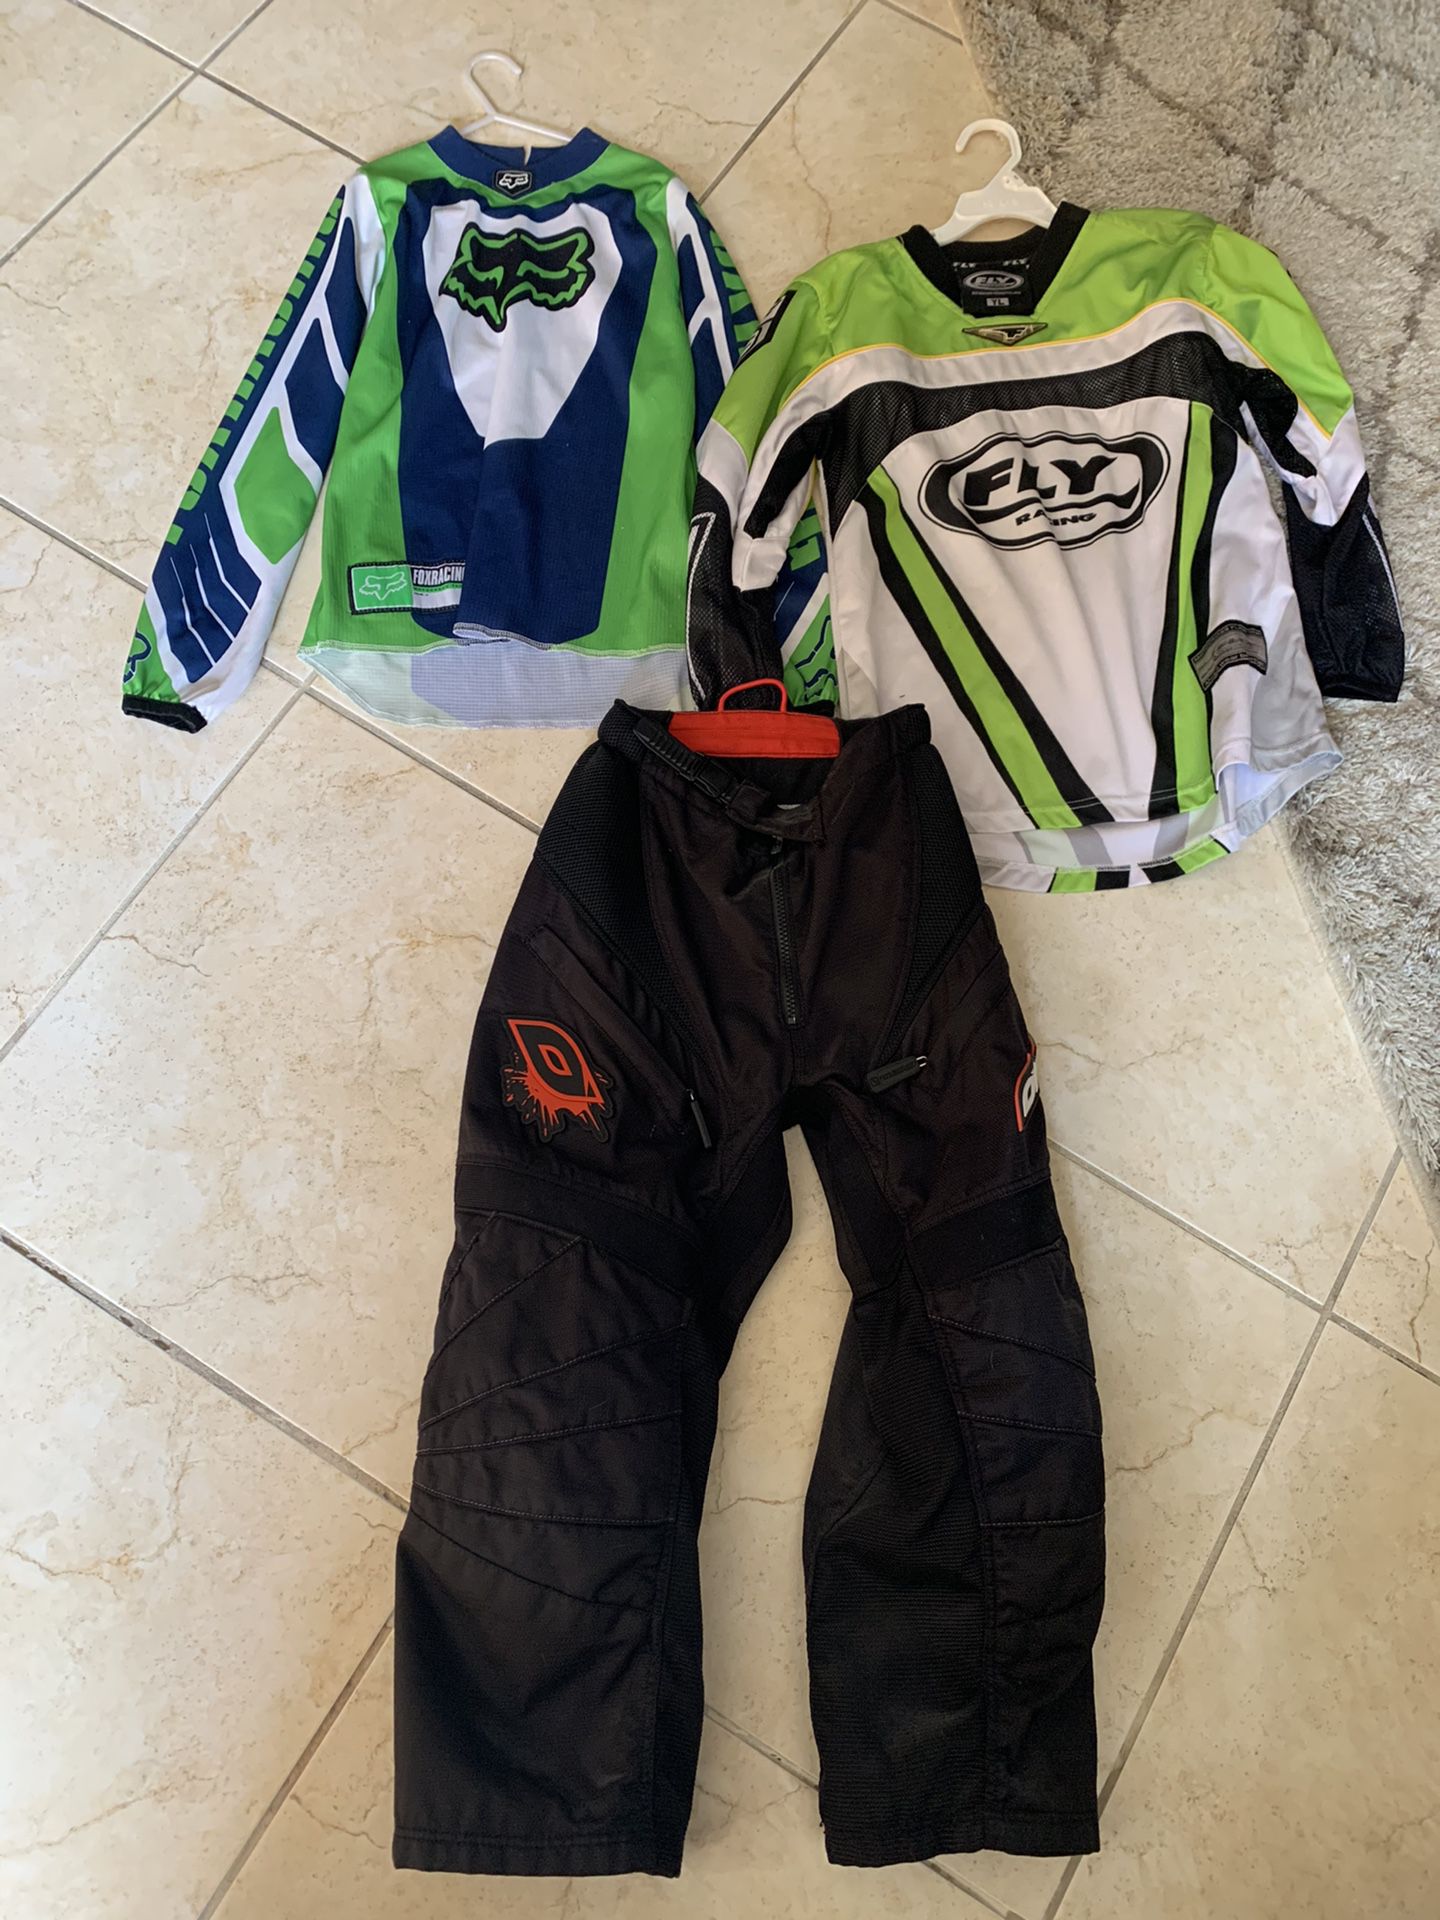 Kids racing motorcycle gear